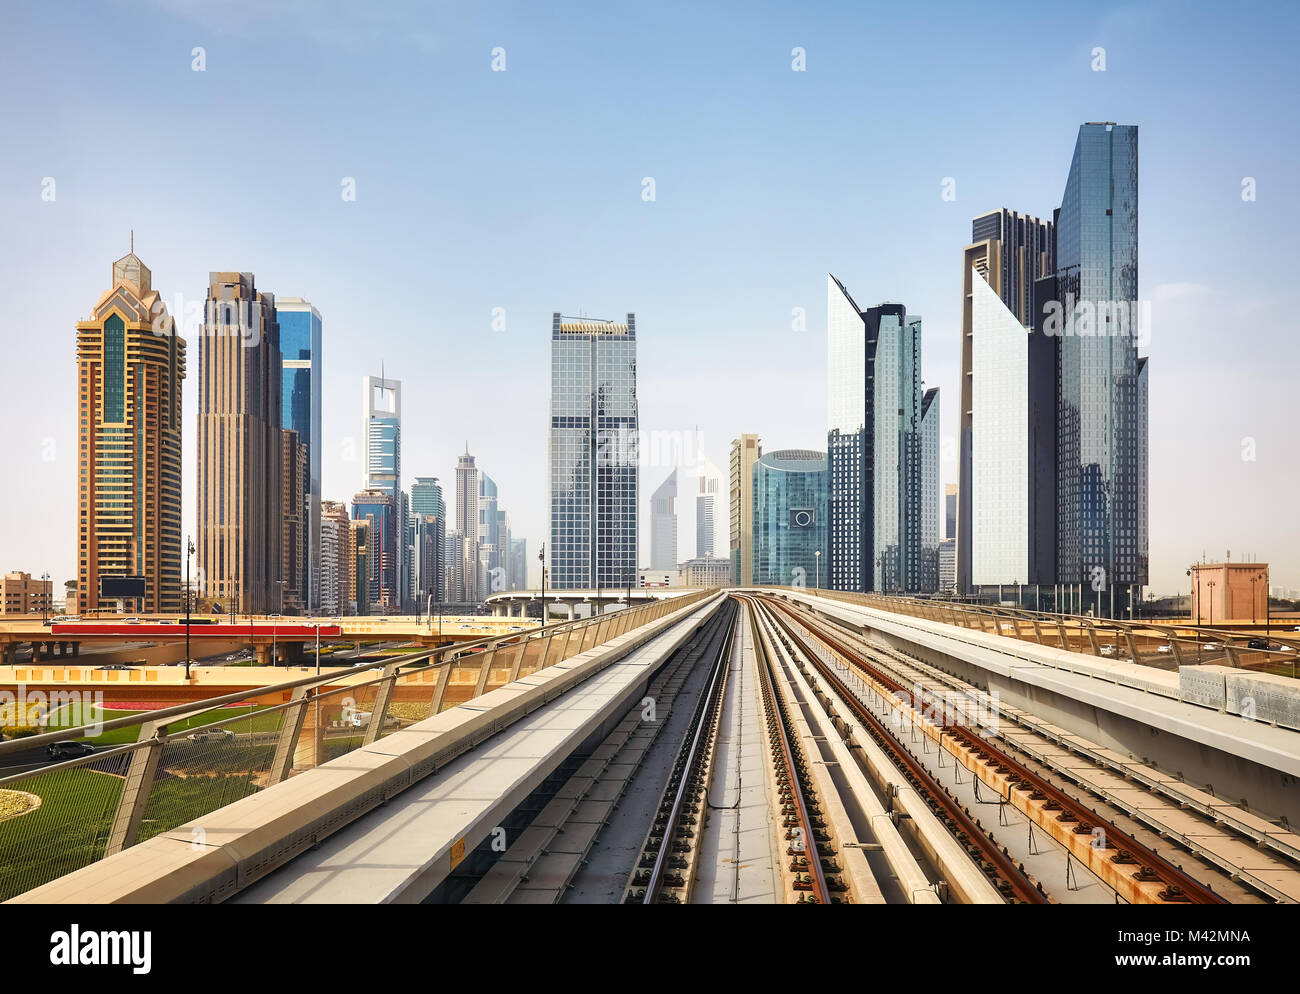 Le centre-ville moderne de Dubaï vu dans une gare de métro, aux Émirats arabes unis. Banque D'Images